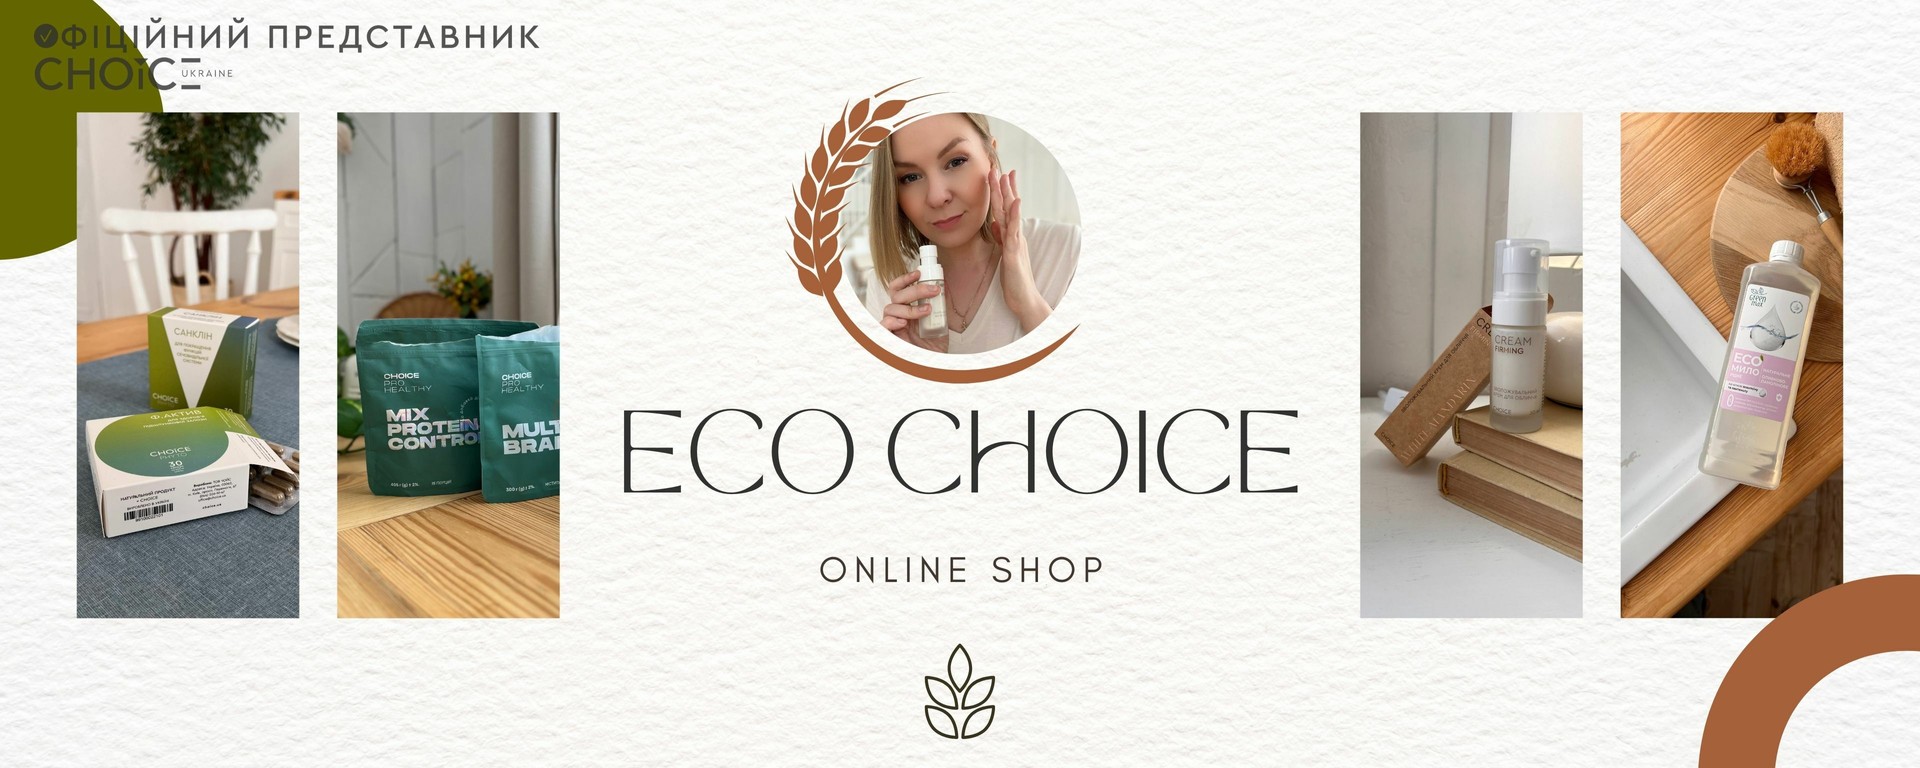 продукция eco choice